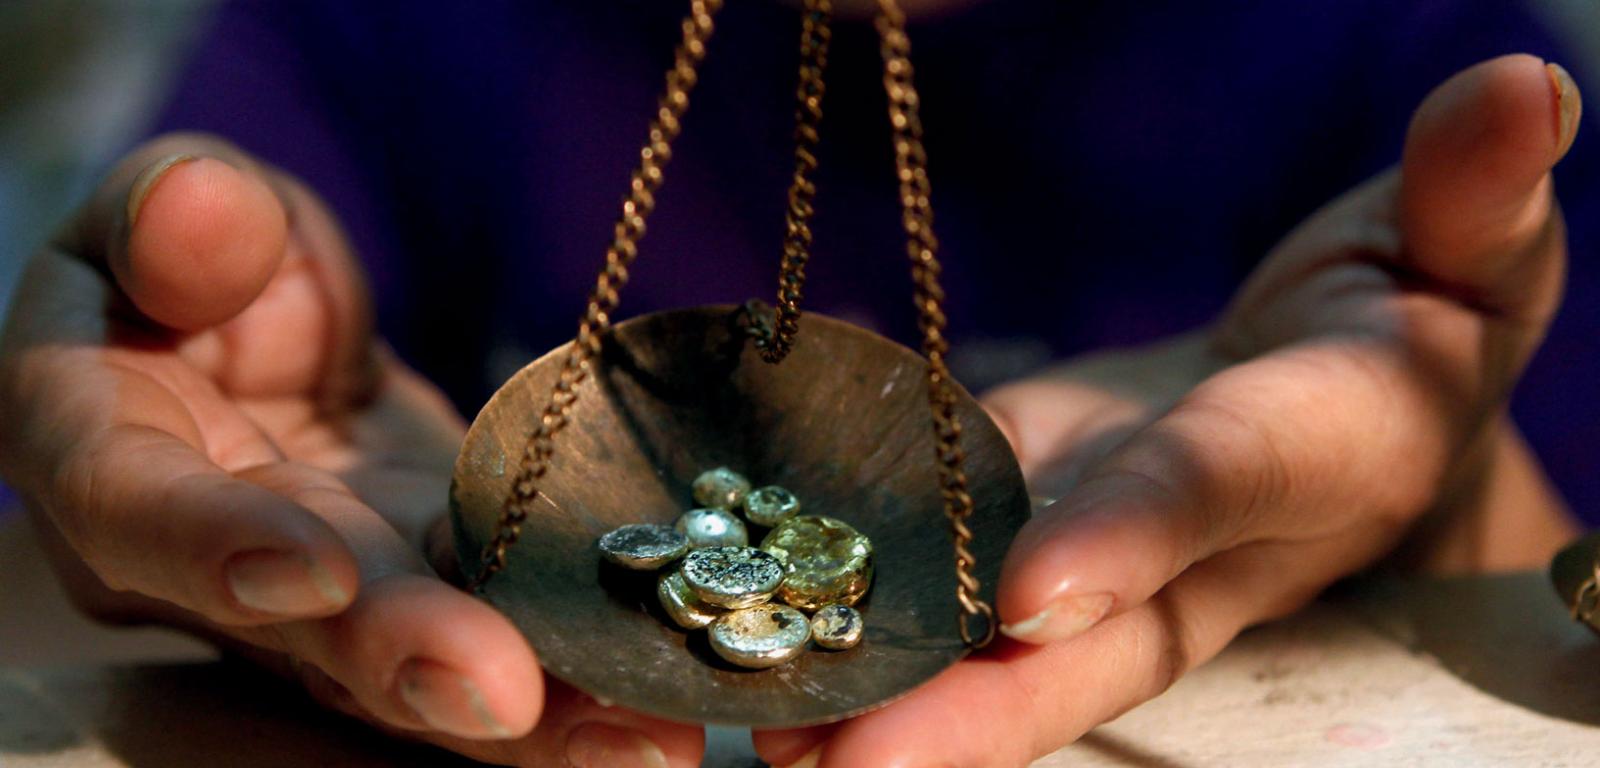 Odważanie złota w Diwalwal na Filipinach. W tej części świata to jedna z najbardziej dochodowych kopalń poza prawem.